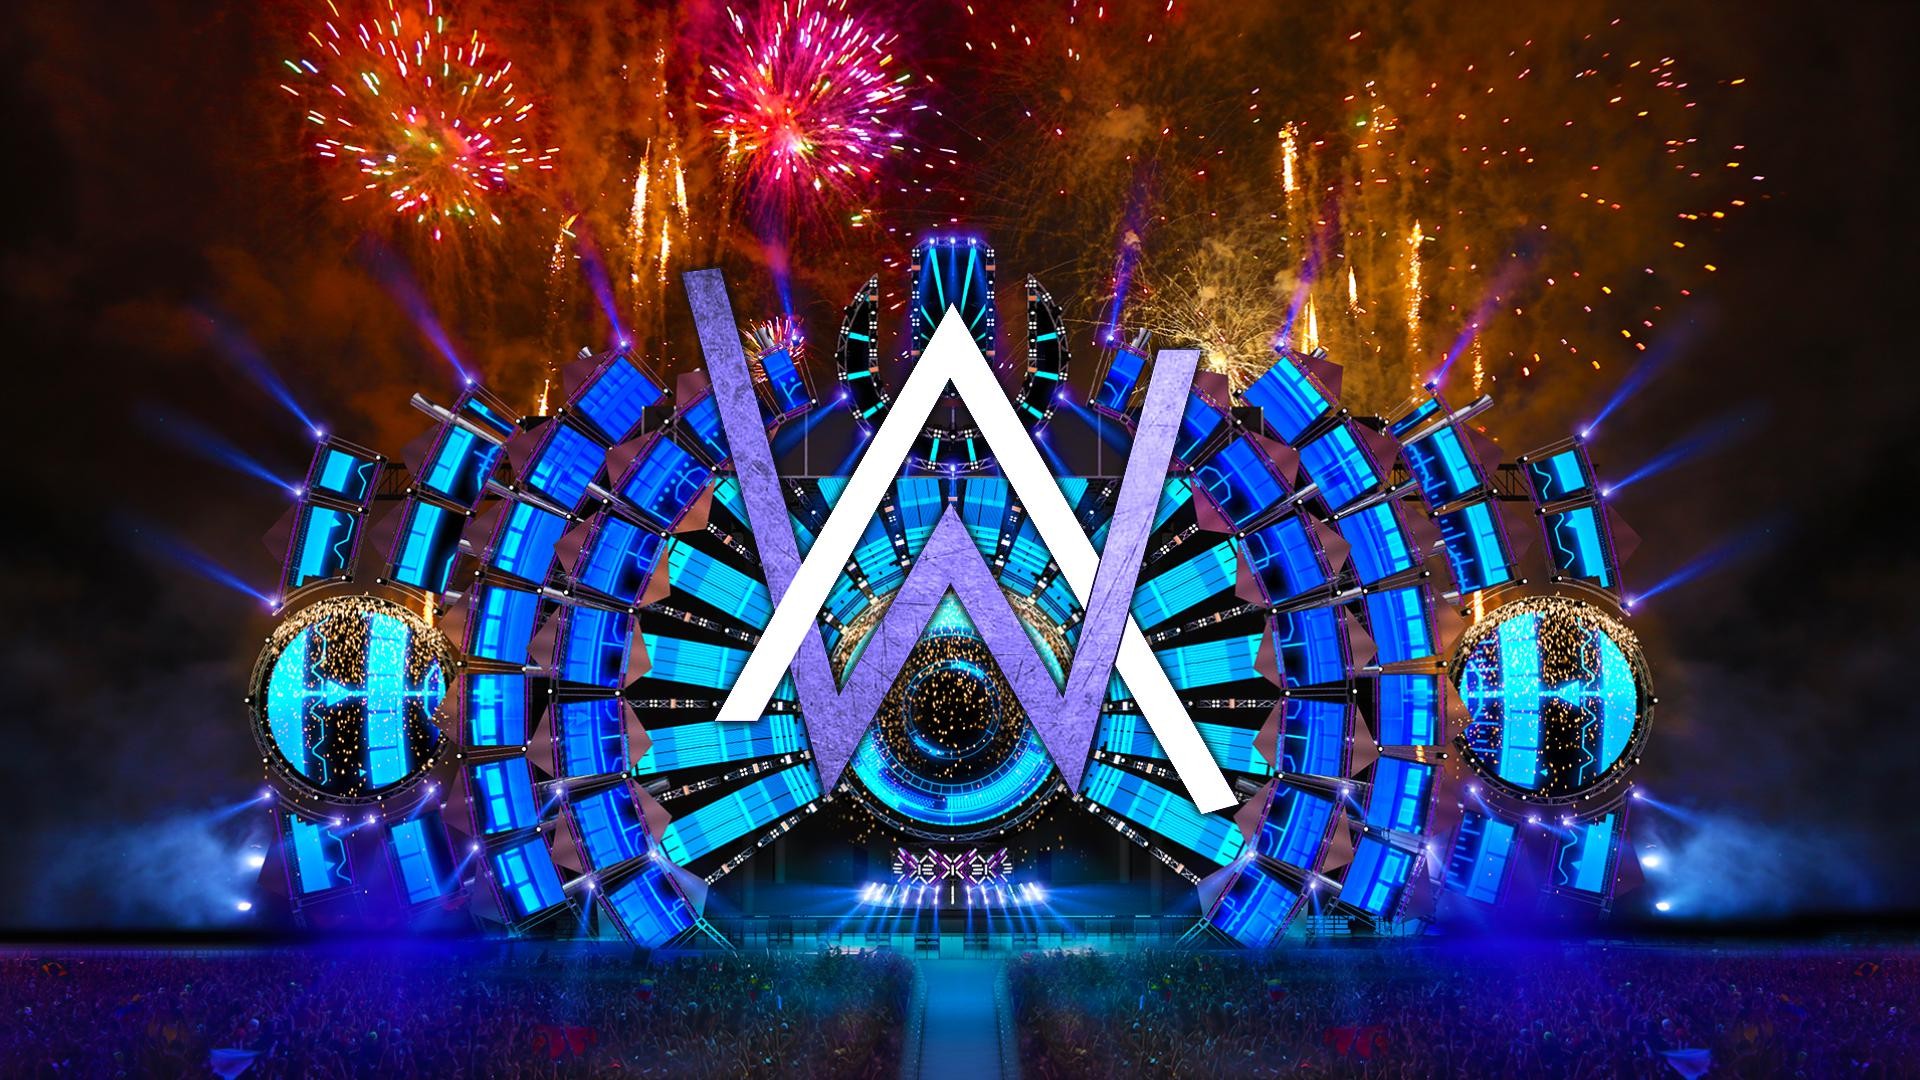 alan walker logo wallpaper,light,landmark,fireworks,lighting,event